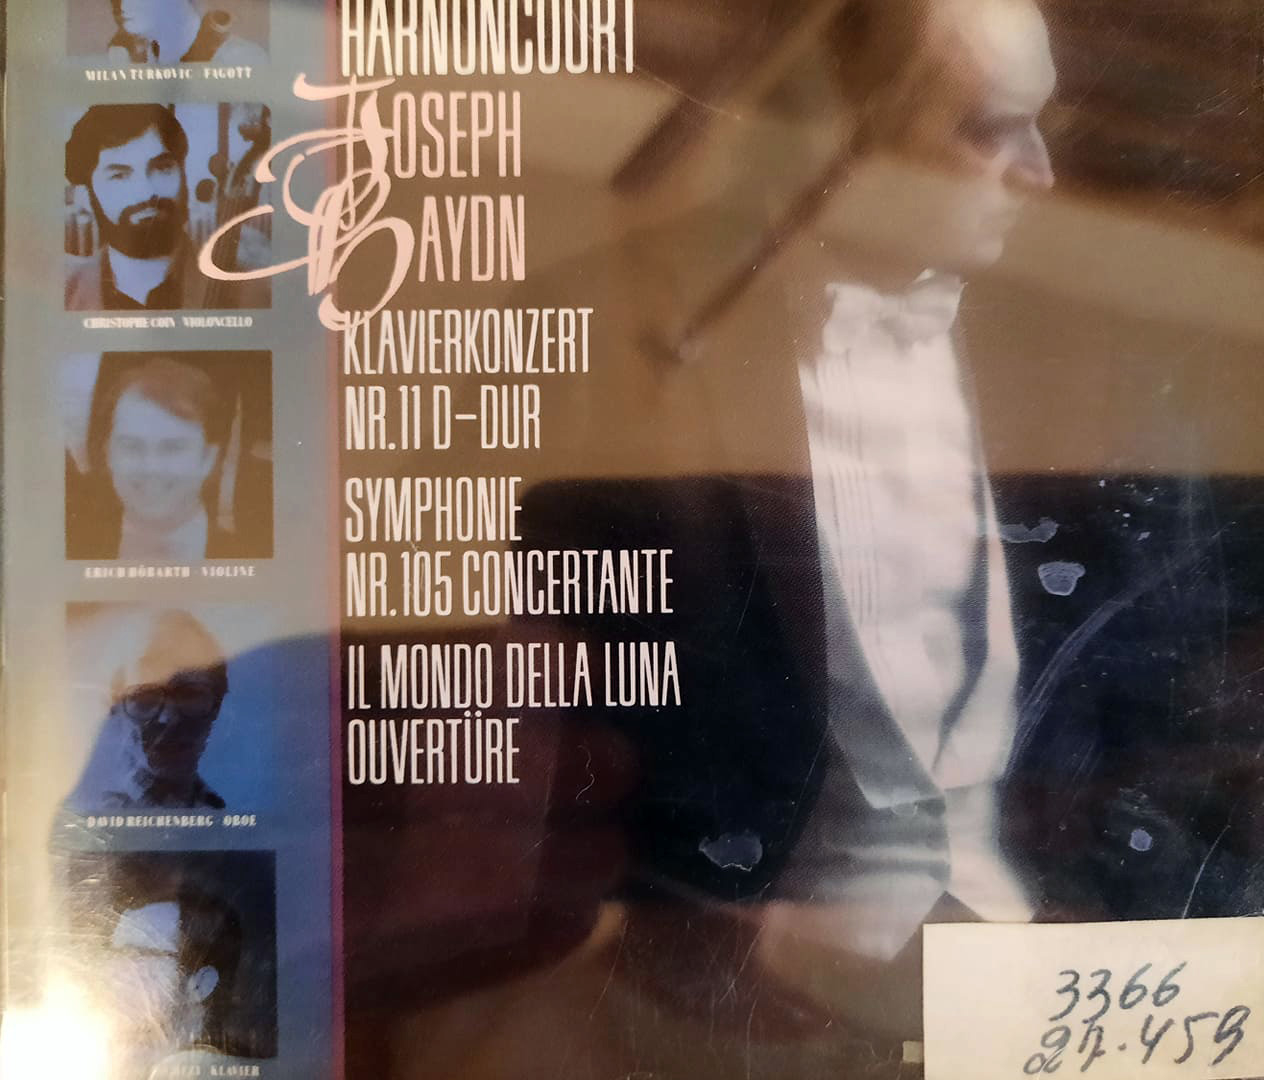 Կոնցերտ դաշնամուրի համար No 11, D-dur, Սիմֆոնիա No 105, B-dur«Concertante», նախերգանք «Il Mondo de la Luna» օպերայից